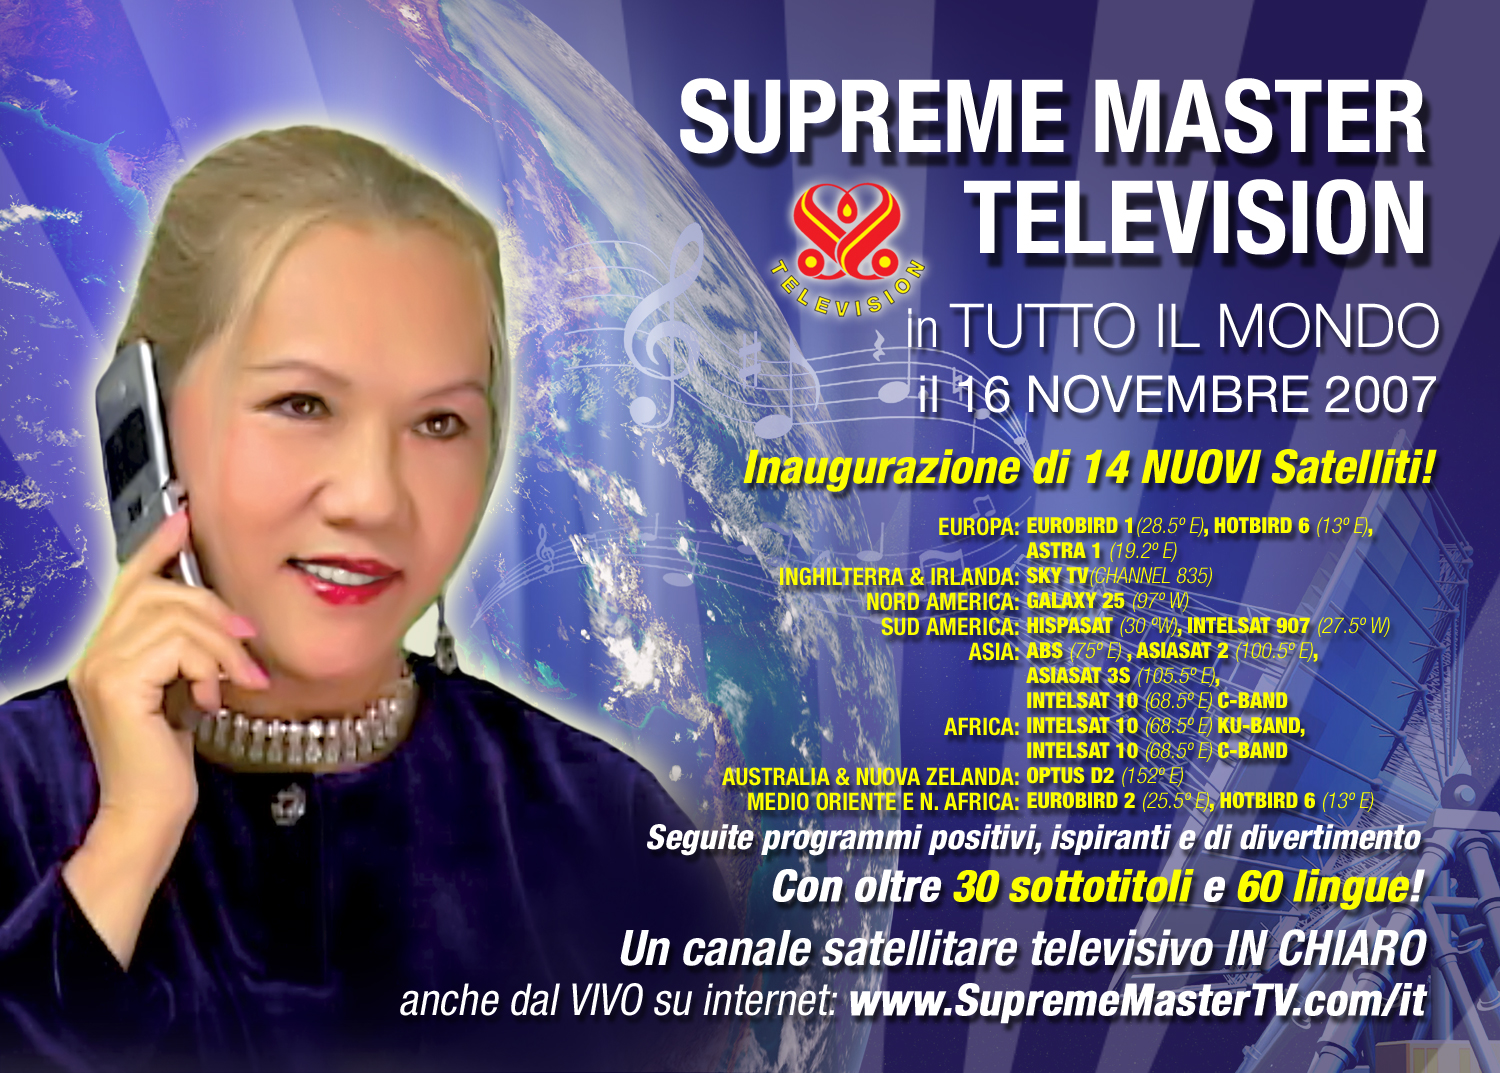 Supreme Master Television si trasmtte in tutto il mondo il 16 novembre 2007